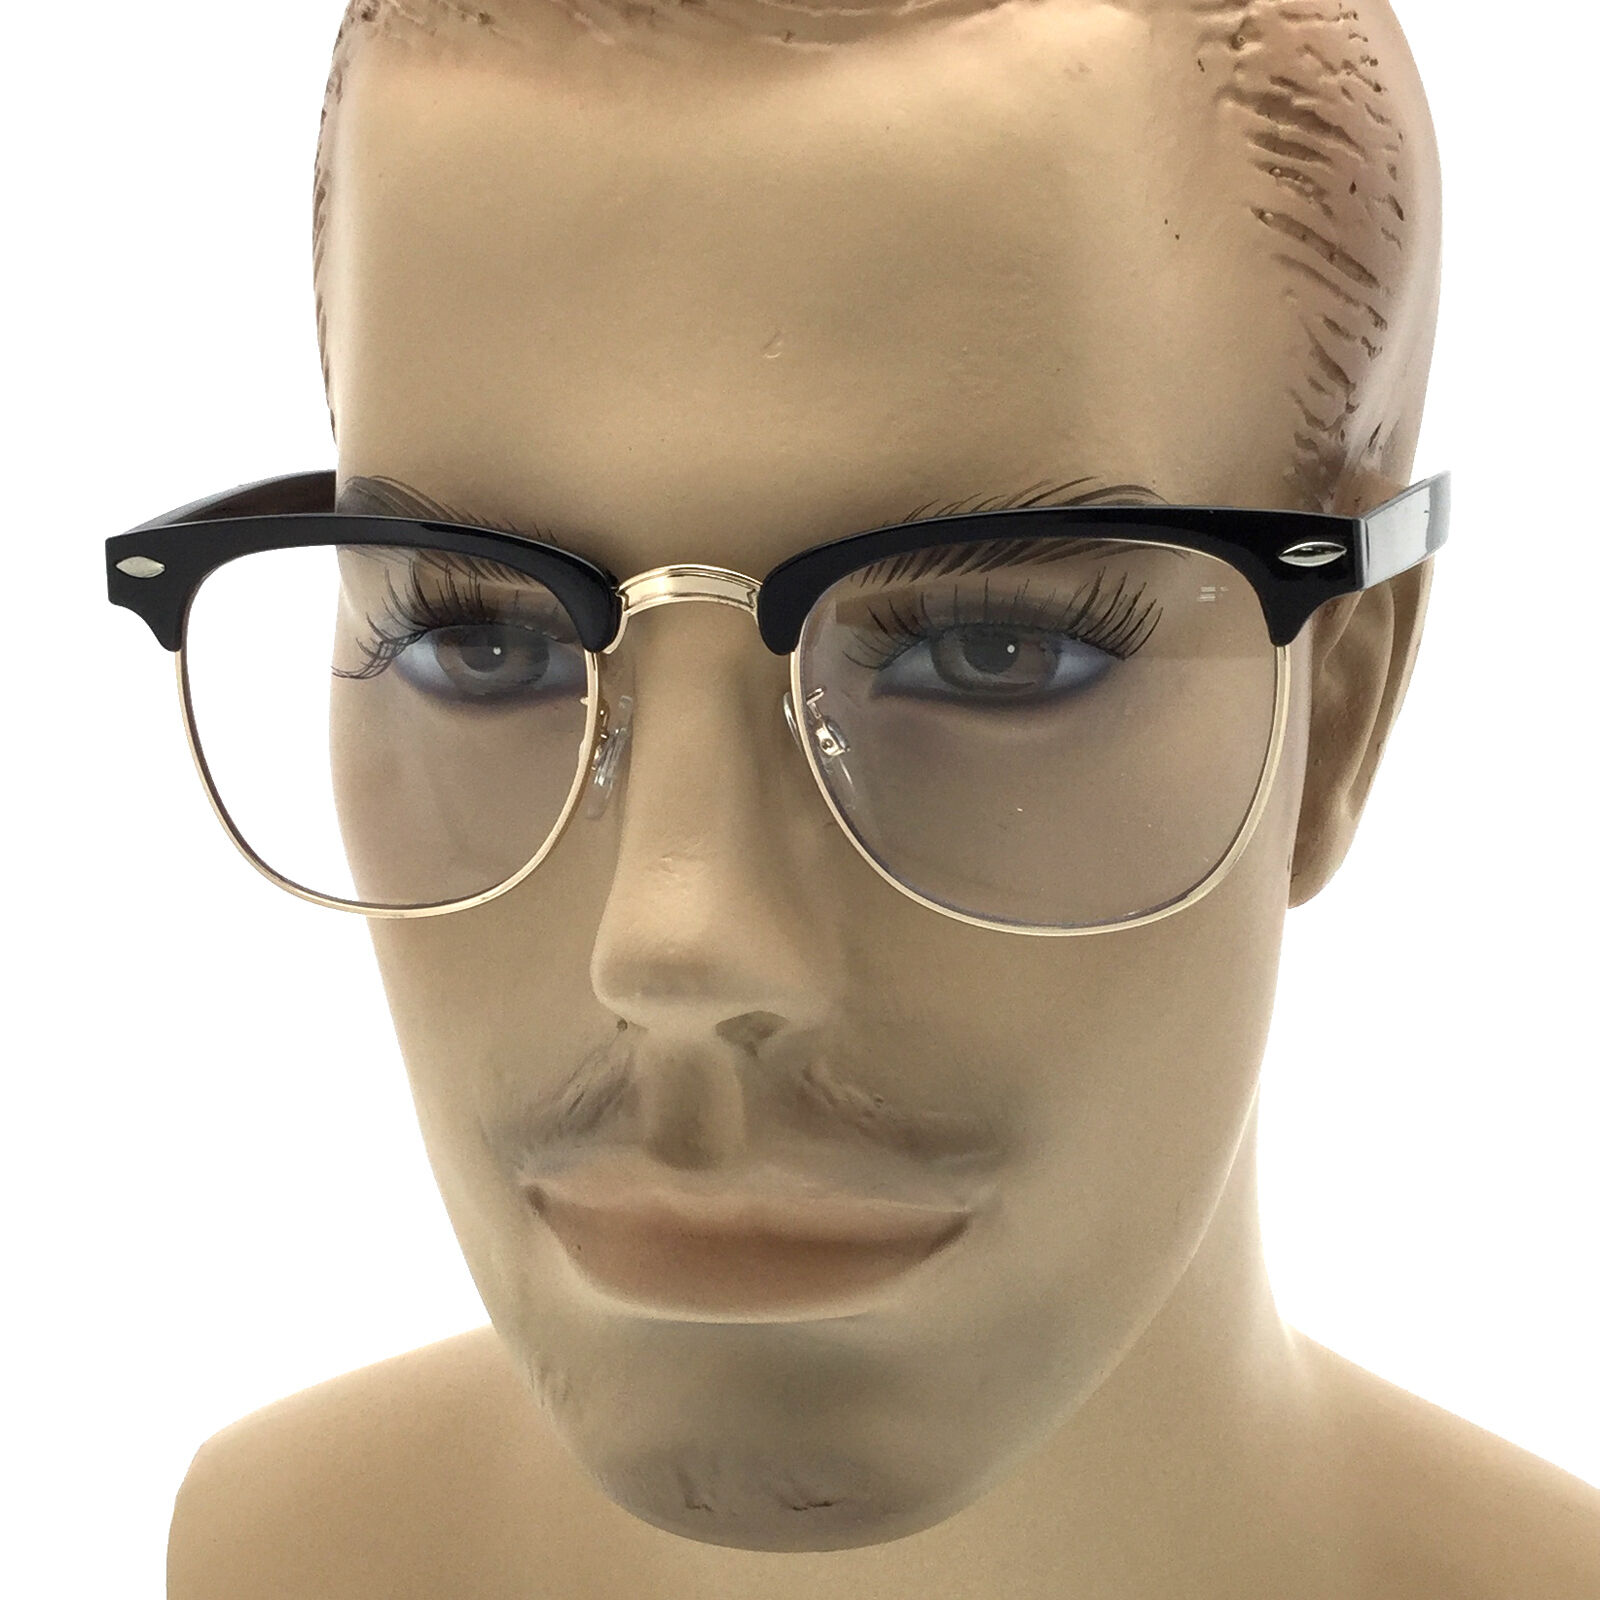 Мужские очки металлические. Прозрачные очки мужские. Прозрачные очки для зрения мужские. Стильные прозрачные очки мужские. Модные мужские очки.